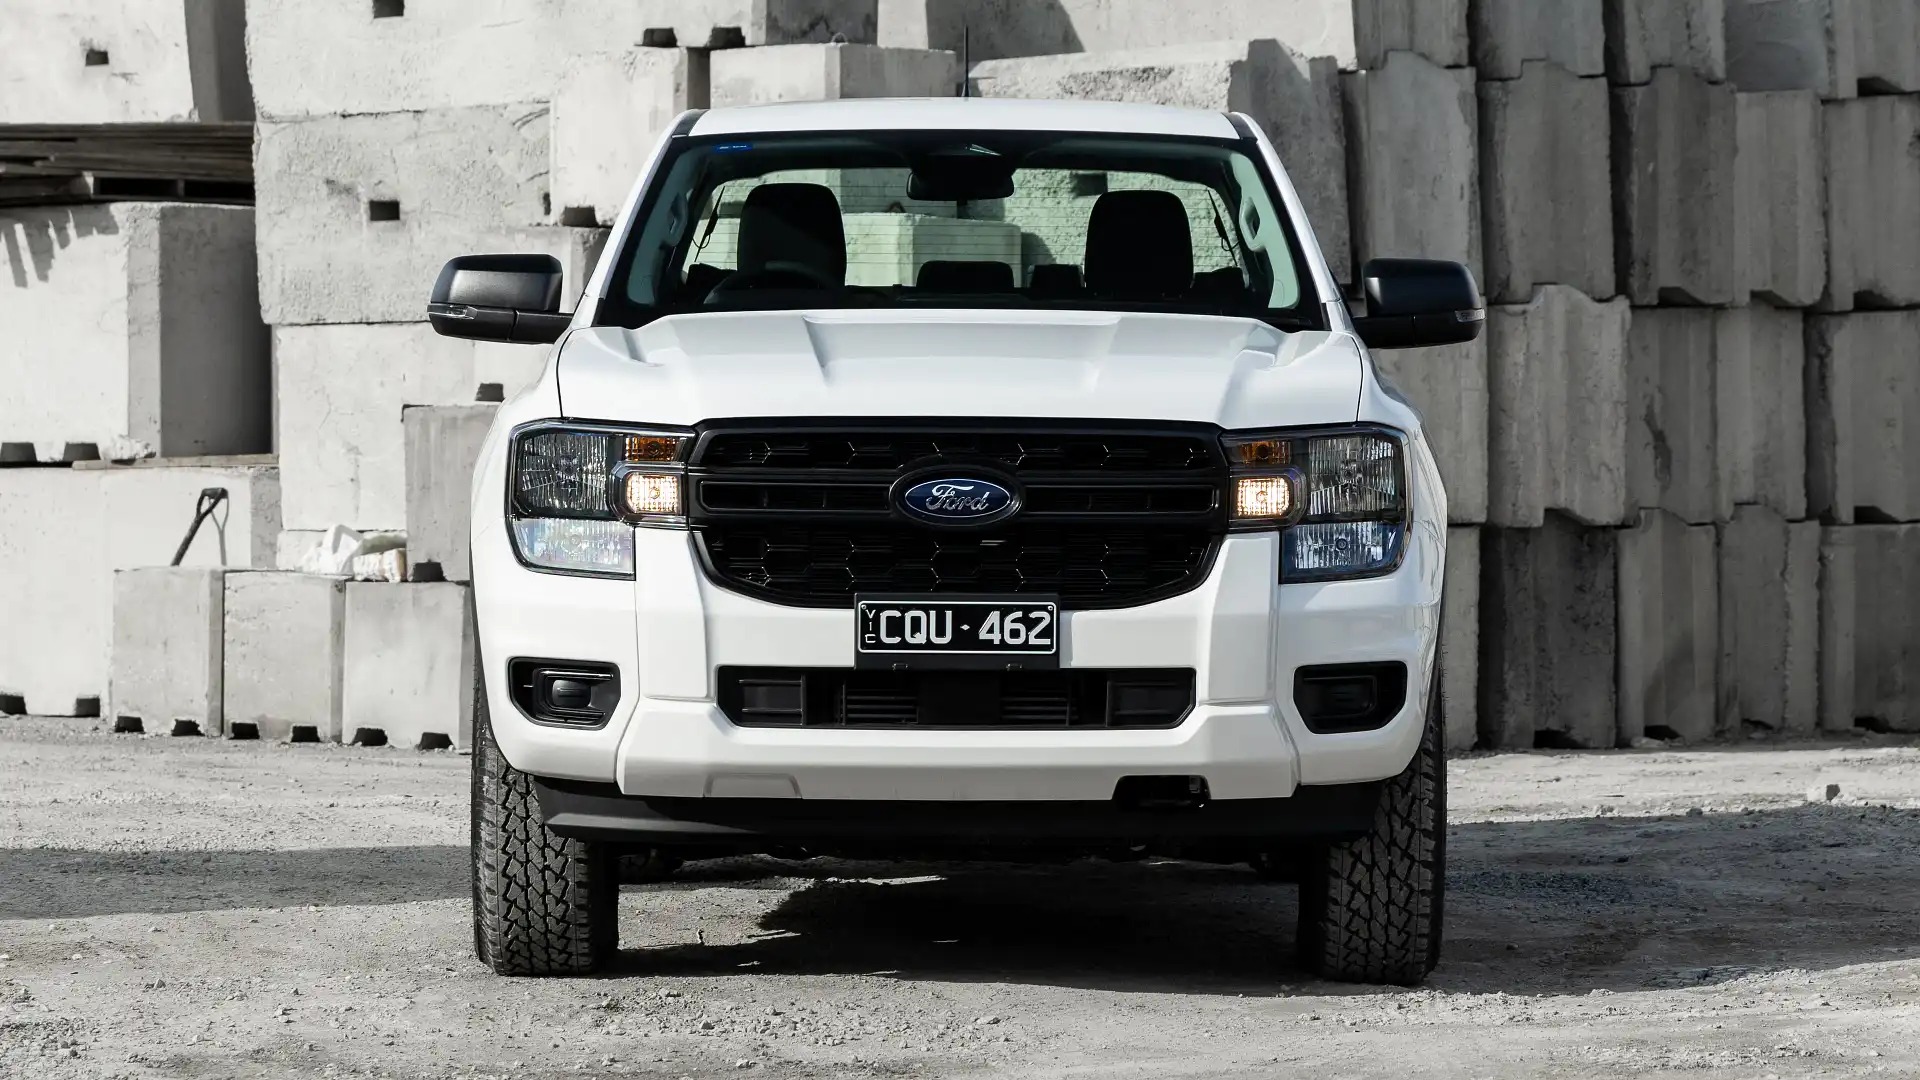 Ford Ranger thêm bản Black Edition: Lưới tản nhiệt và mâm xe tối màu, giới hạn 1.500 xe, giá quy đổi từ 965 triệu đồng- Ảnh 4.